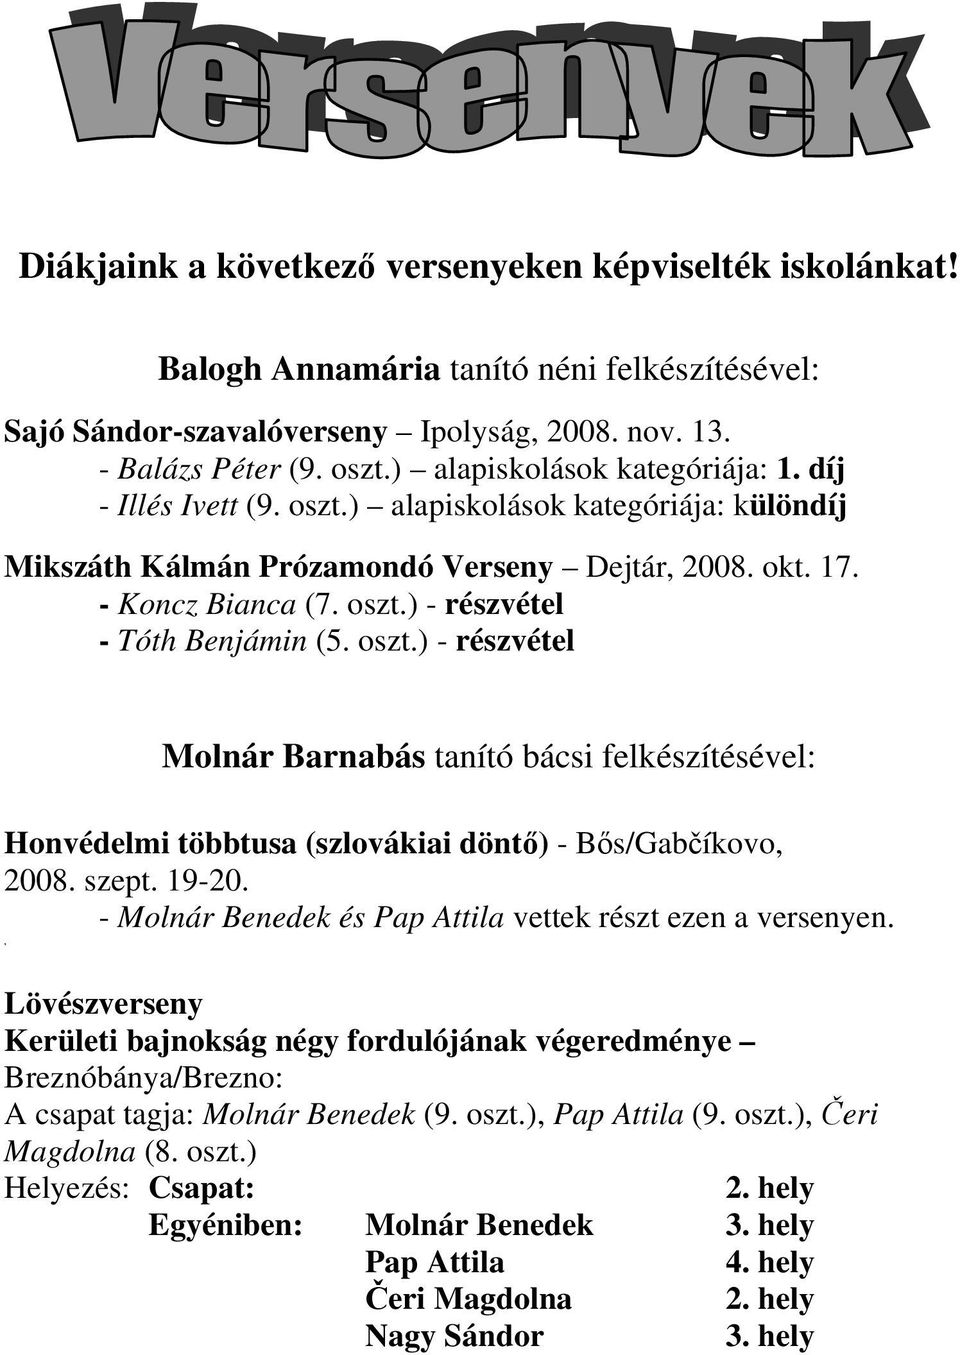 oszt.) - részvétel Molnár Barnabás tanító bácsi felkészítésével: Honvédelmi többtusa (szlovákiai döntő) - Bős/Gabčíkovo, 2008. szept. 19-20.